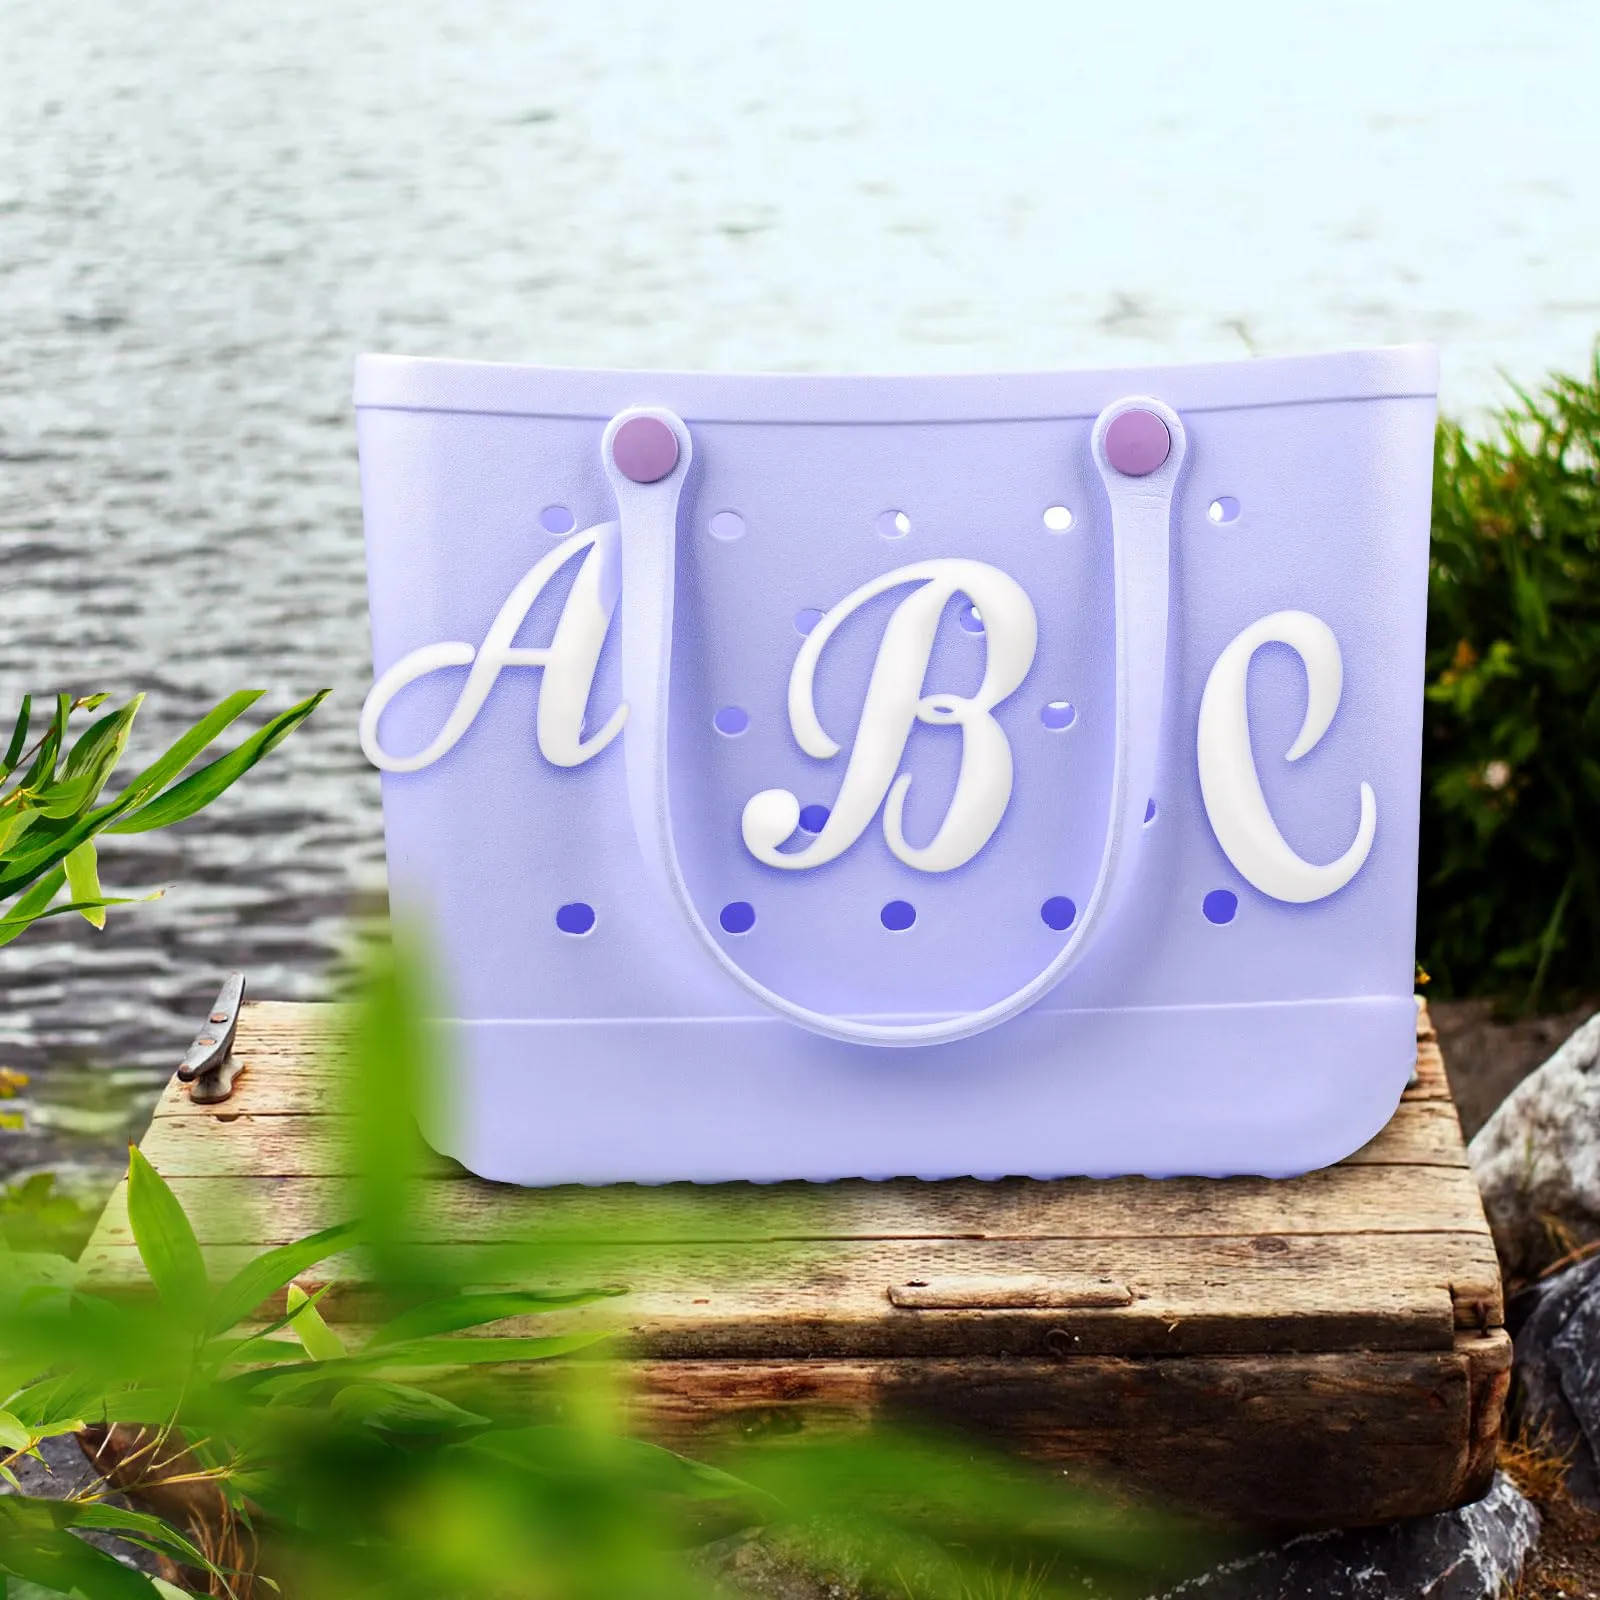 decorative lettering for bogg bag alphabet letters decor letter charms for bogg bag accessories alphabet 3d letters for personalizing handbag diy white